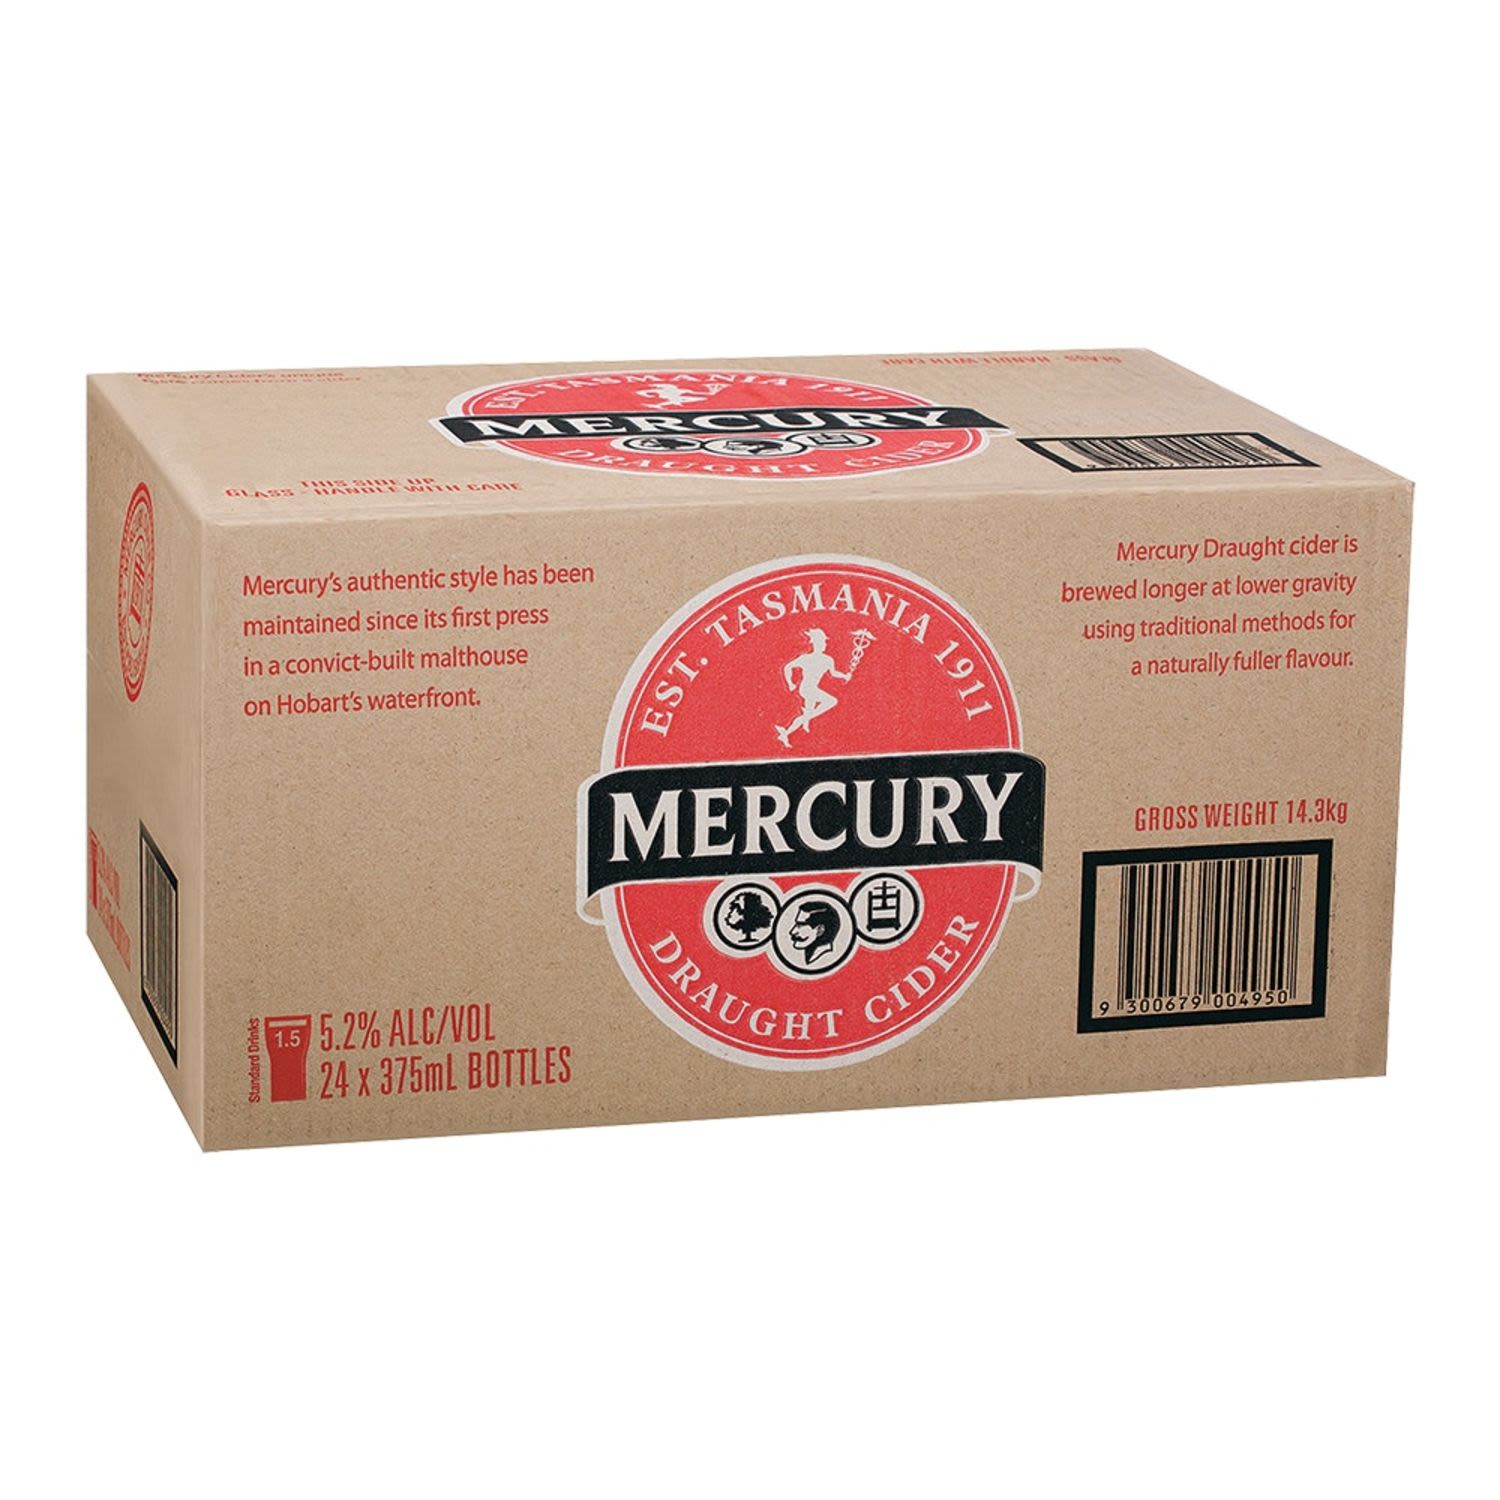 Mercury Draught Cider Bottle 375mL 24 Pack